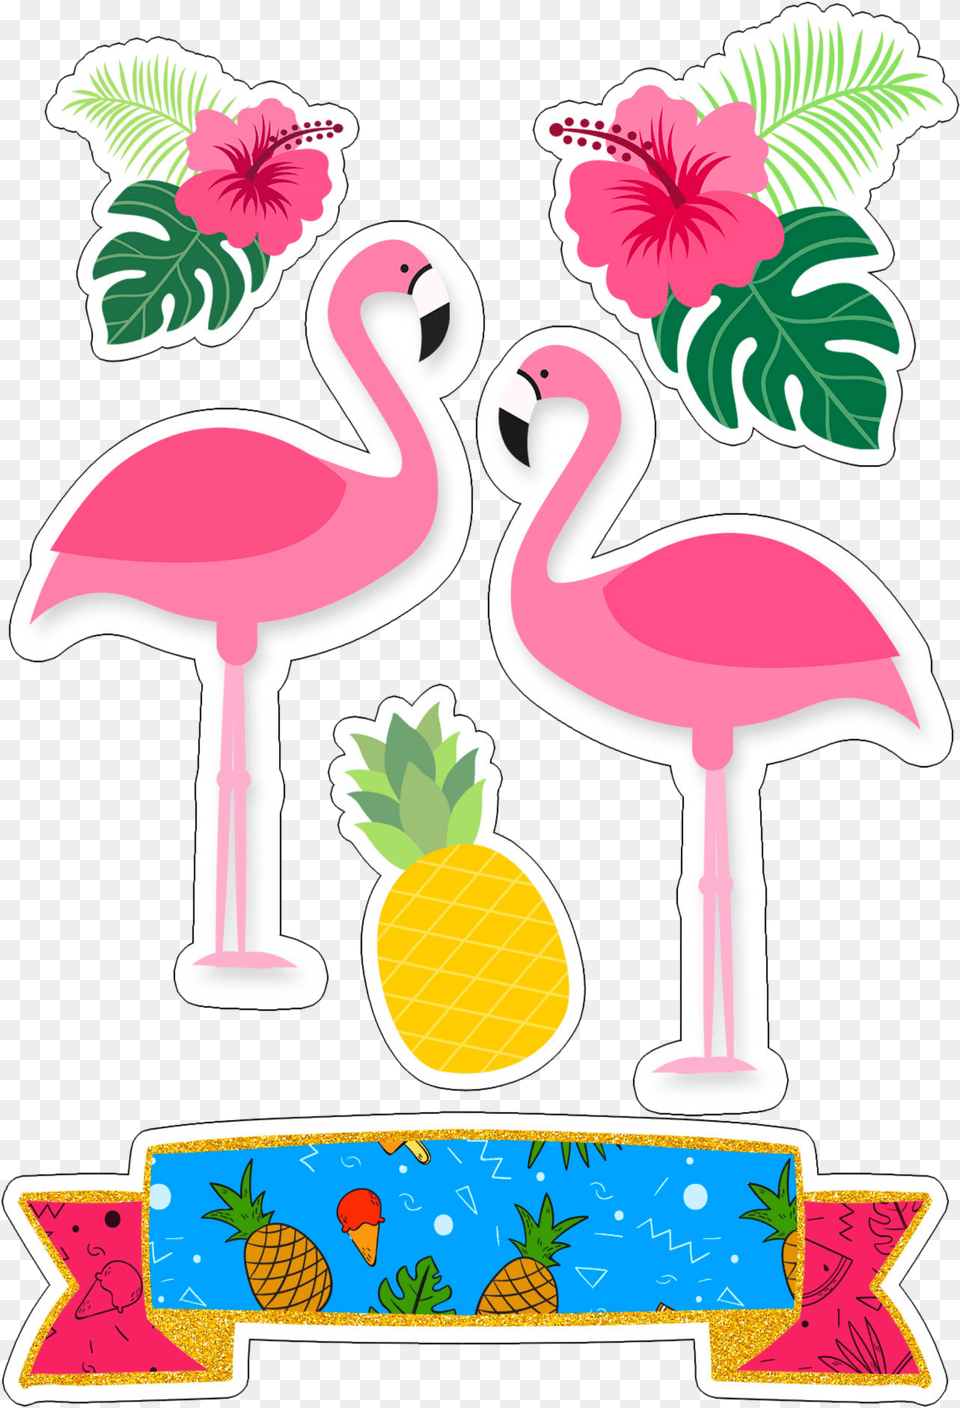 Flamingo Abacaxi Tropical Topo De Bolo Topo Flamingo, Animal, Bird Free Transparent Png